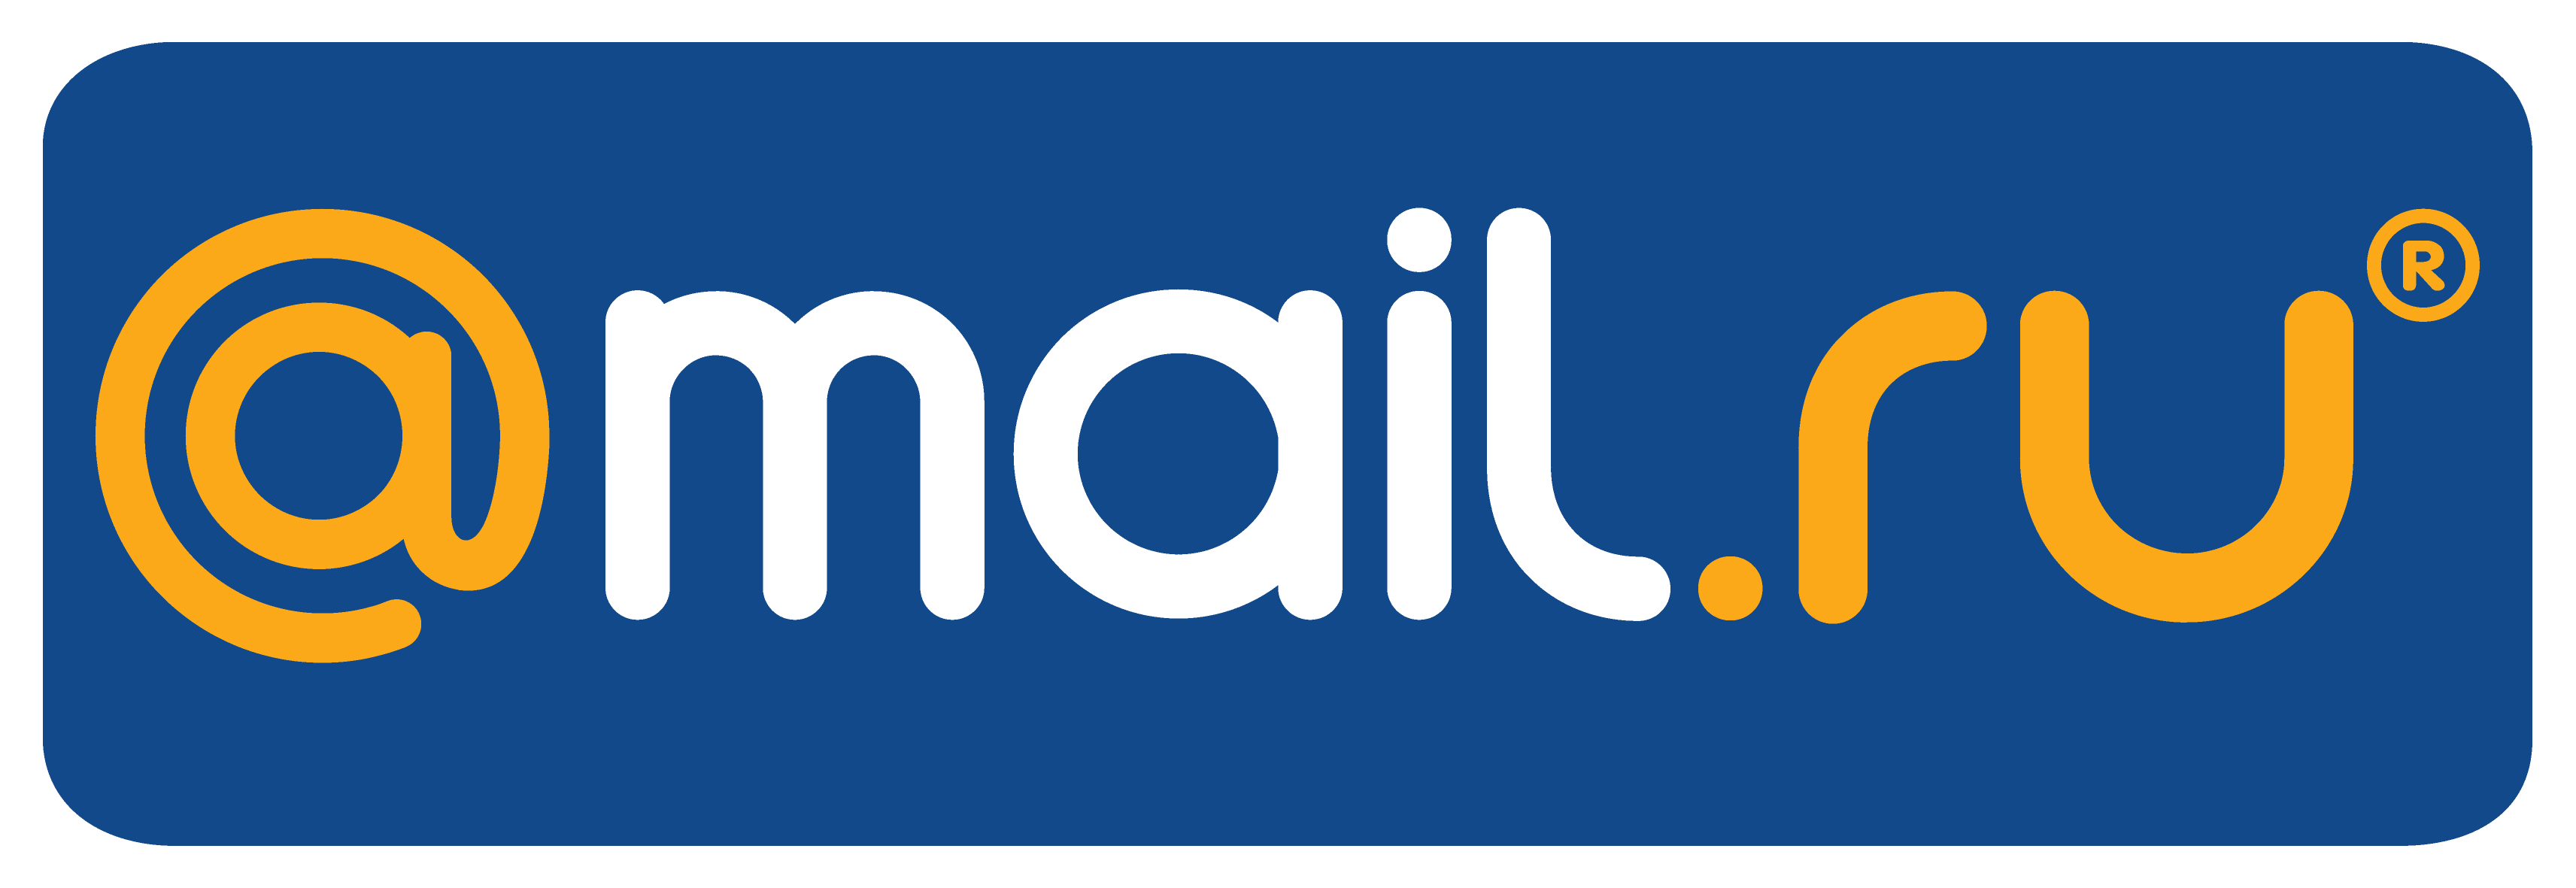 Mail domain ru. Mail. Mail.ru лого. Почта майл. Логотип мейл ру.